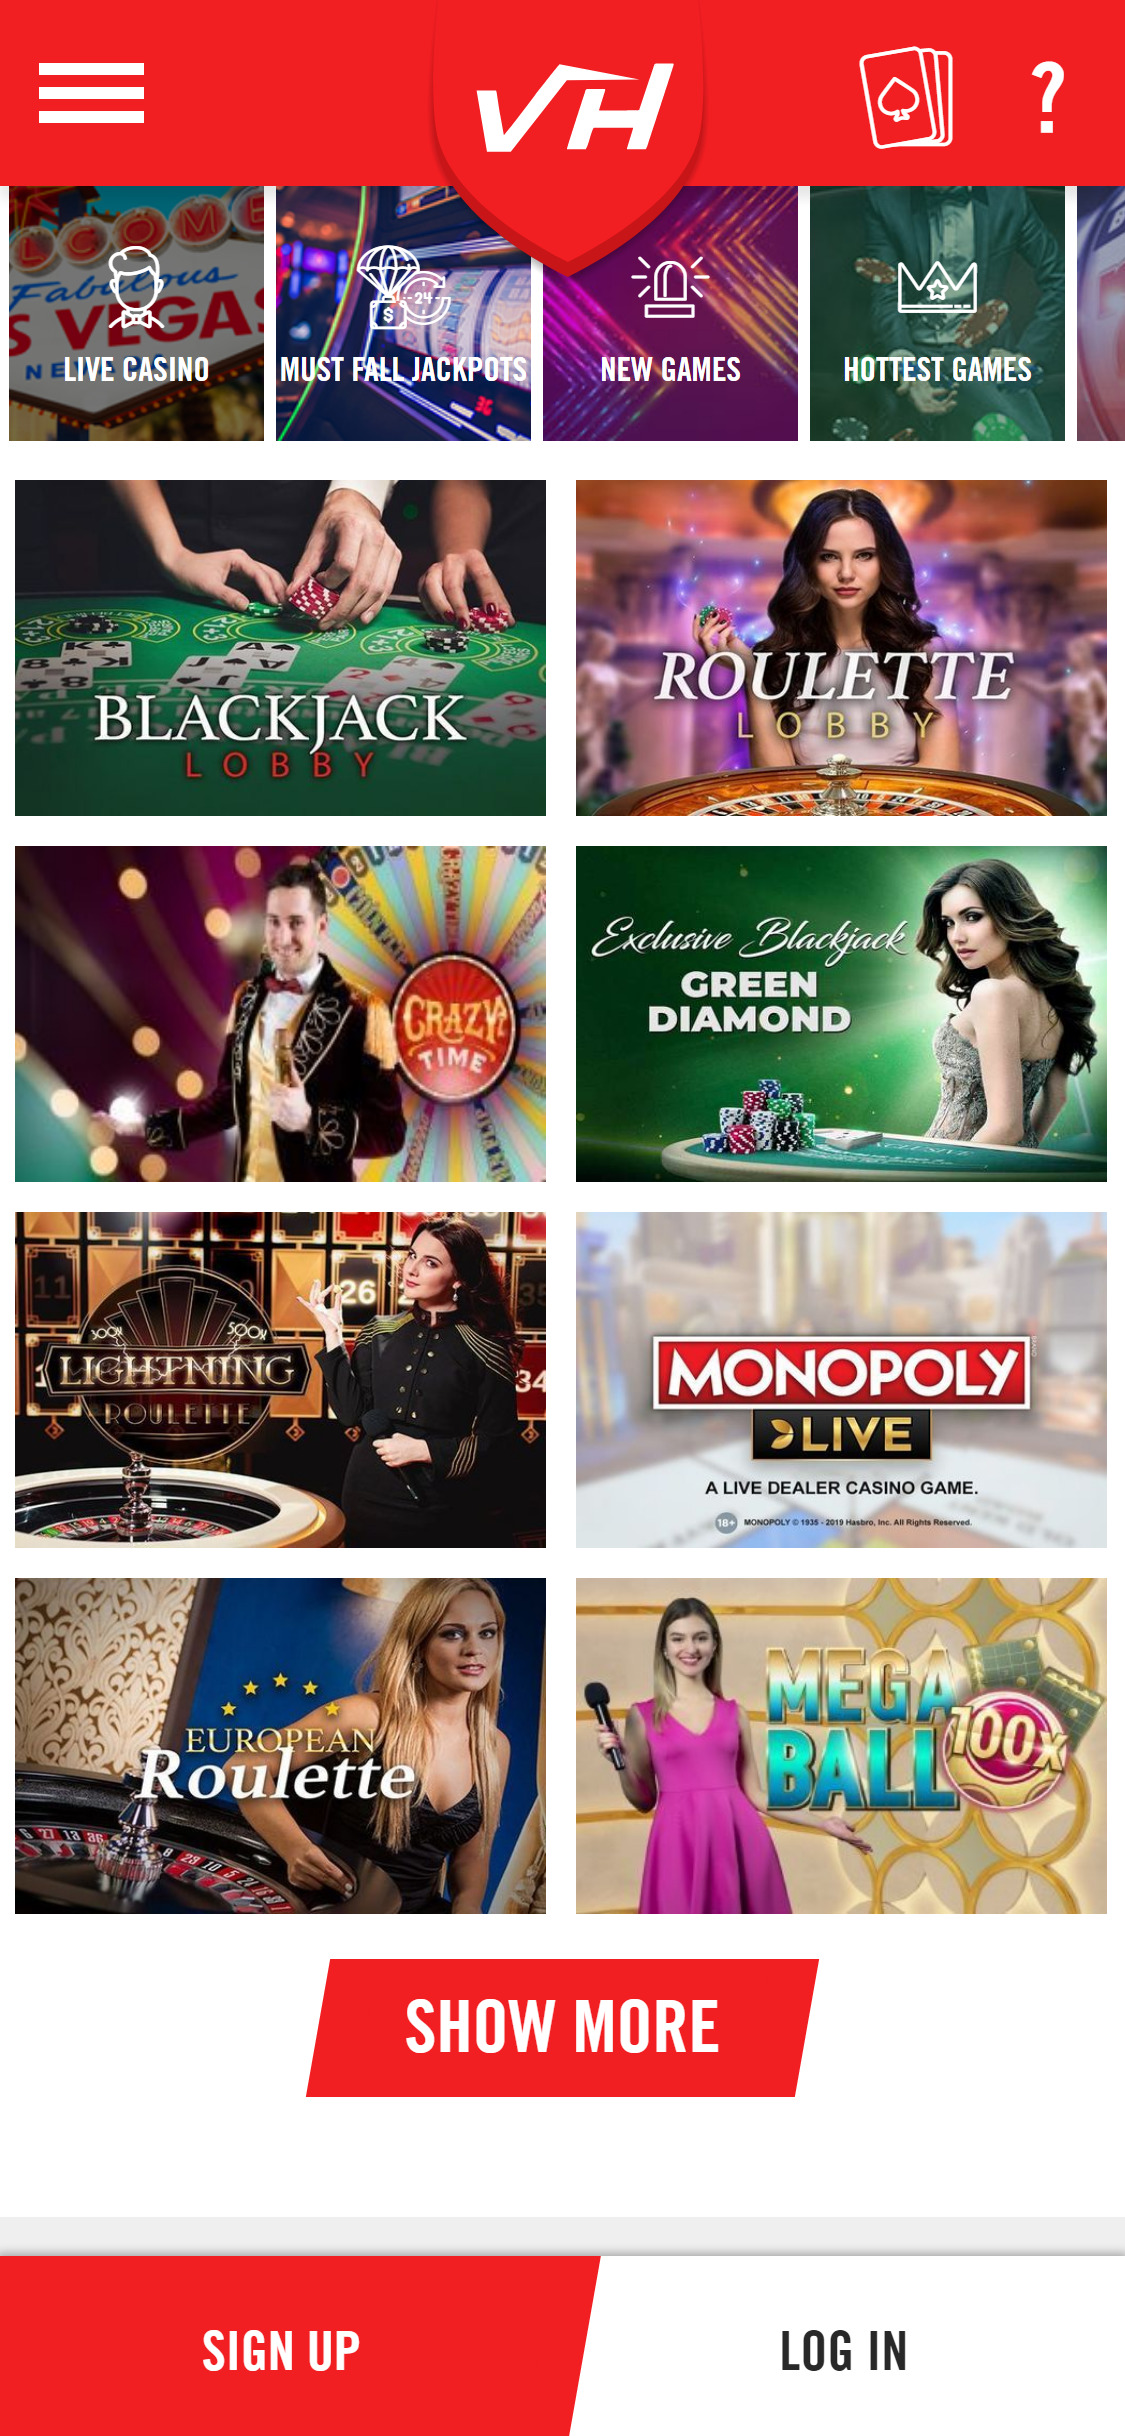 VegasHero Casino Mobile Live Dealer Games Review